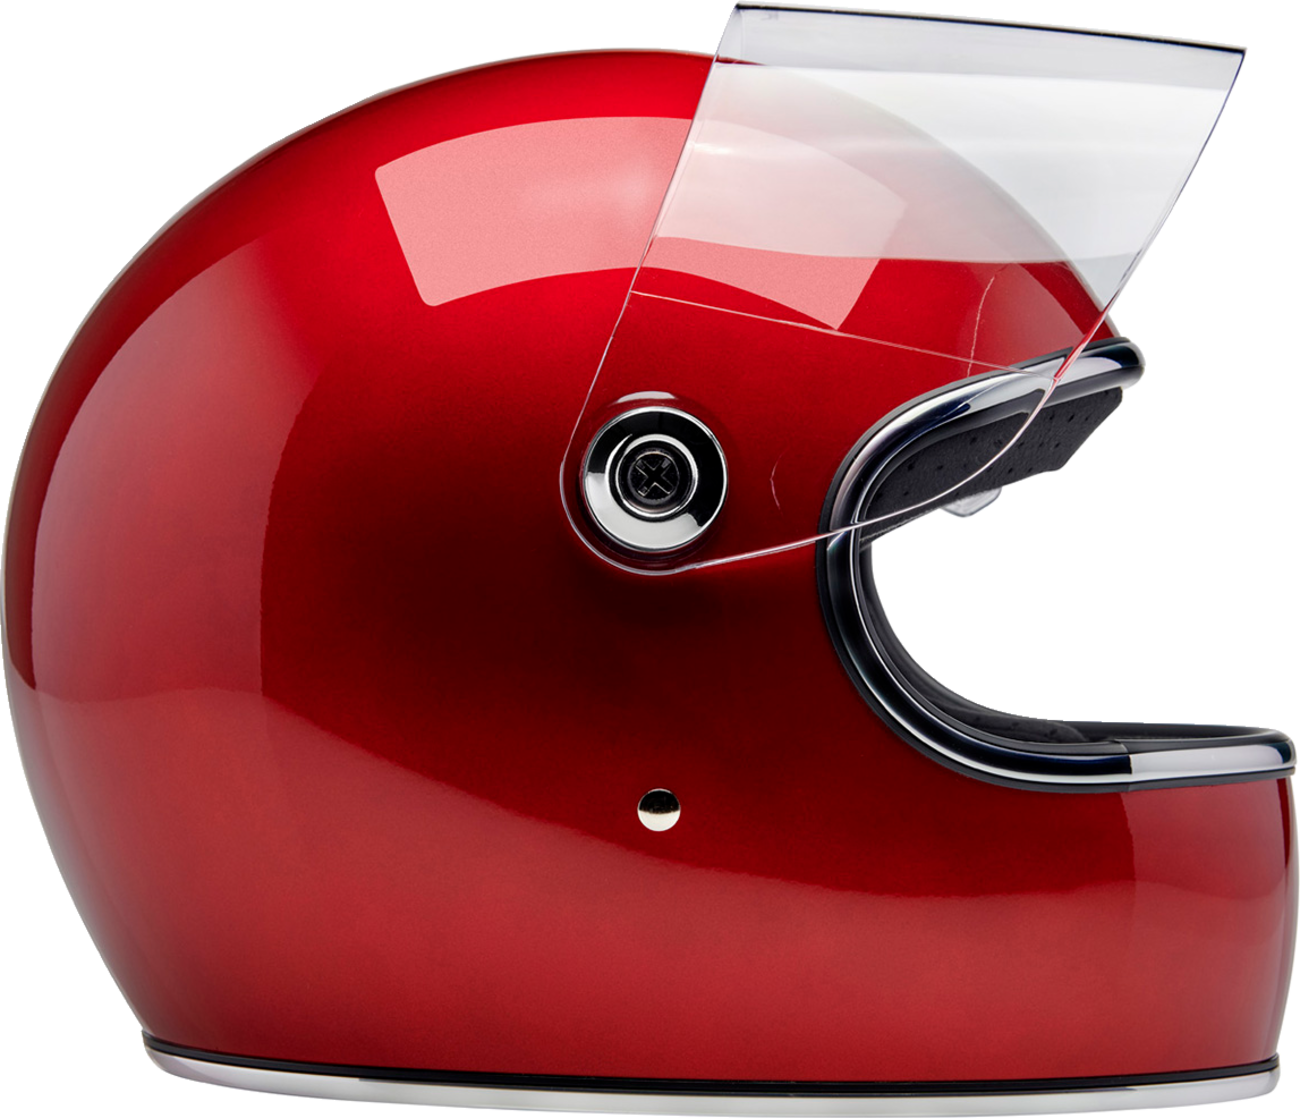 BILTWELL Gringo S Helmet - Metallic Cherry Red - Medium 1003-351-503